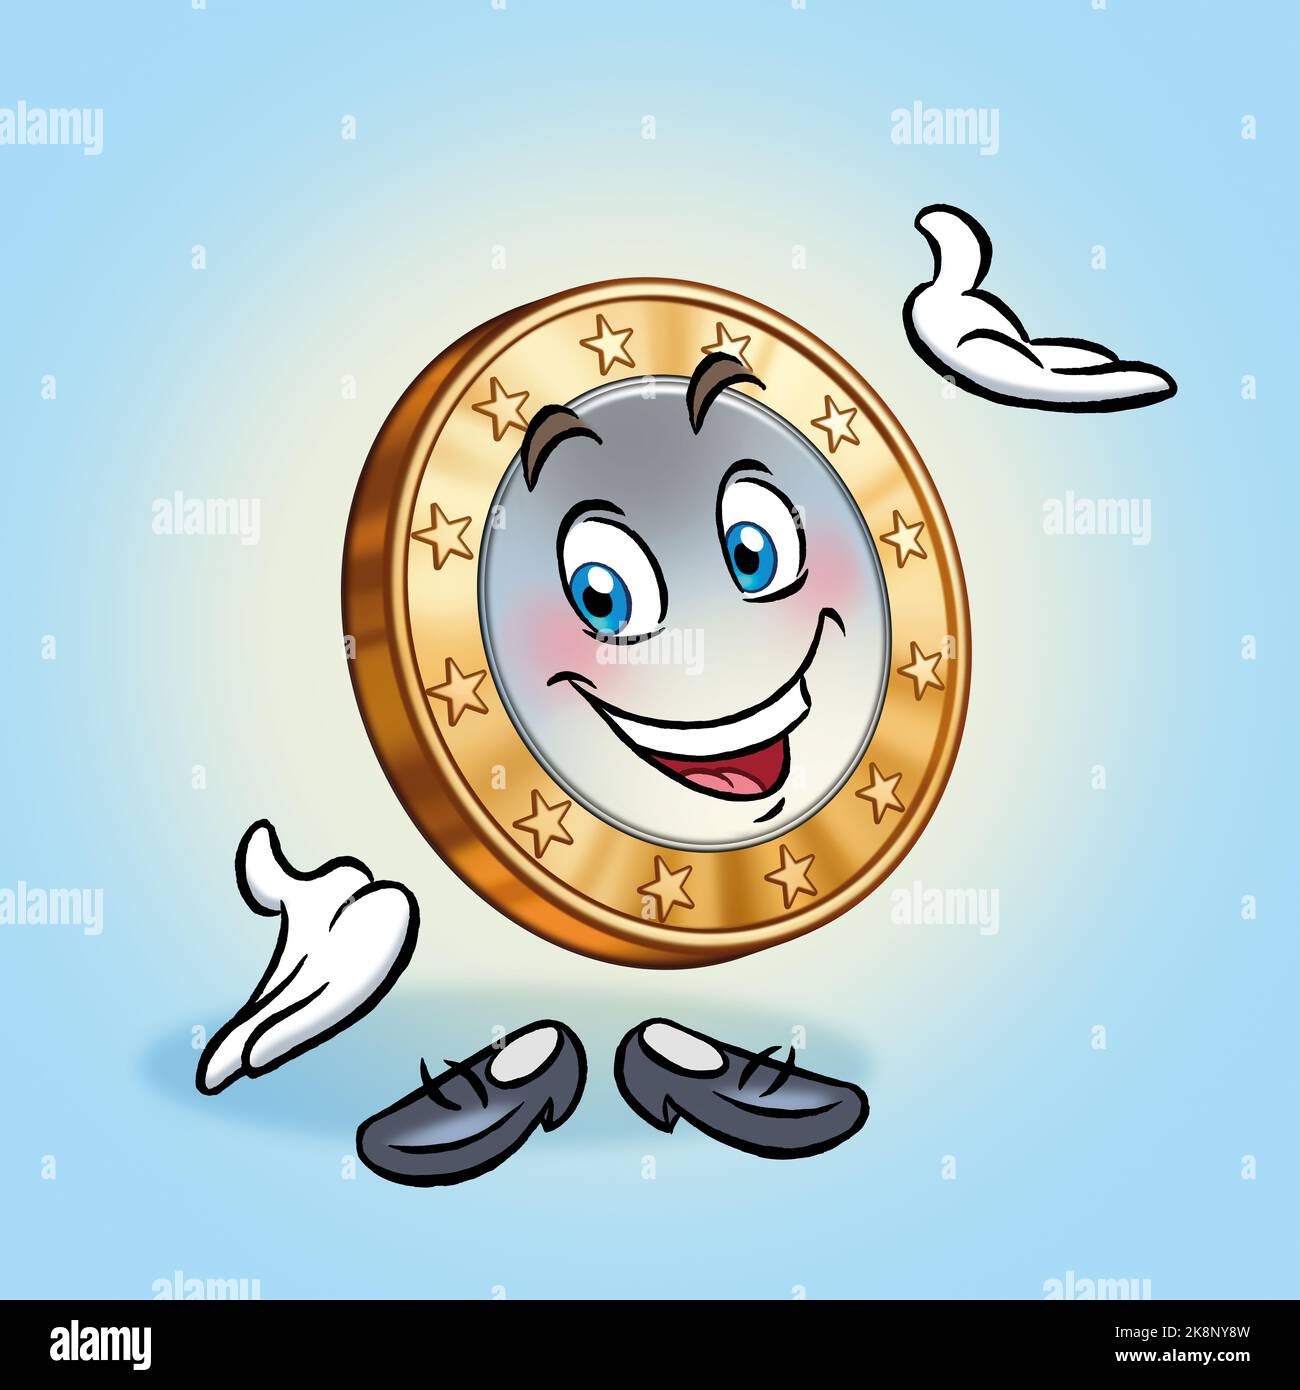 funny-euro-coin-cartoon-character-425-2K8NY8W.jpg